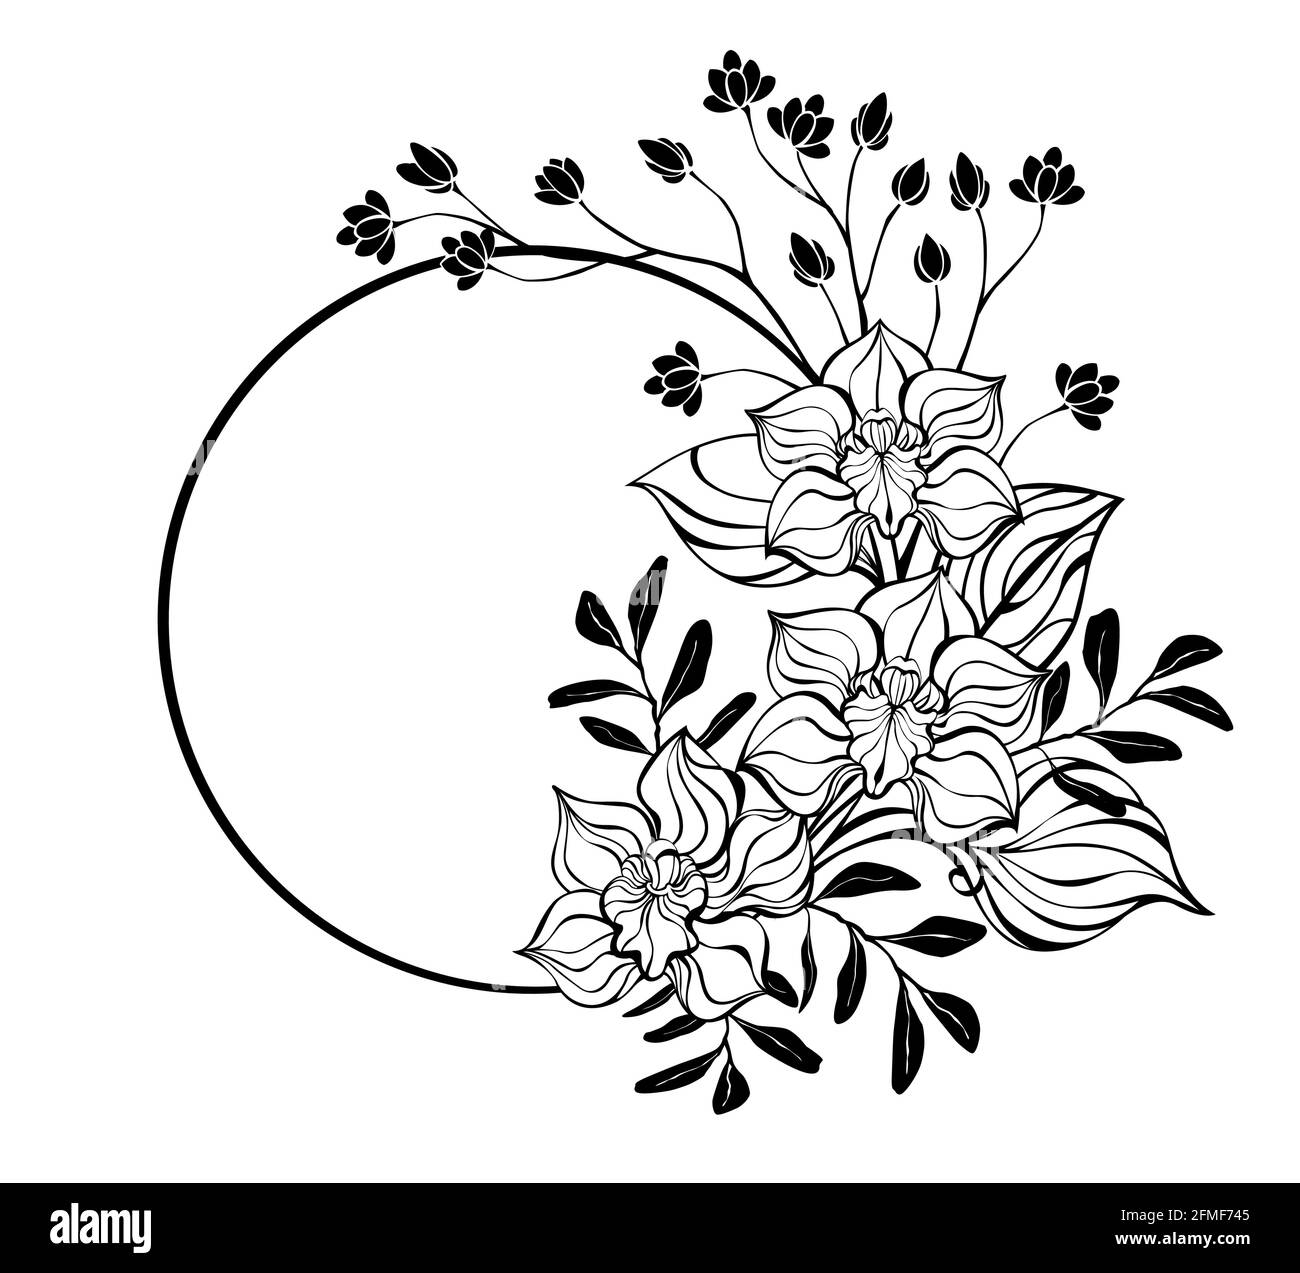 Cornice rotonda, decorata con contorno, ornata artisticamente da fiori orchidee su sfondo bianco. Colorazione. Illustrazione Vettoriale